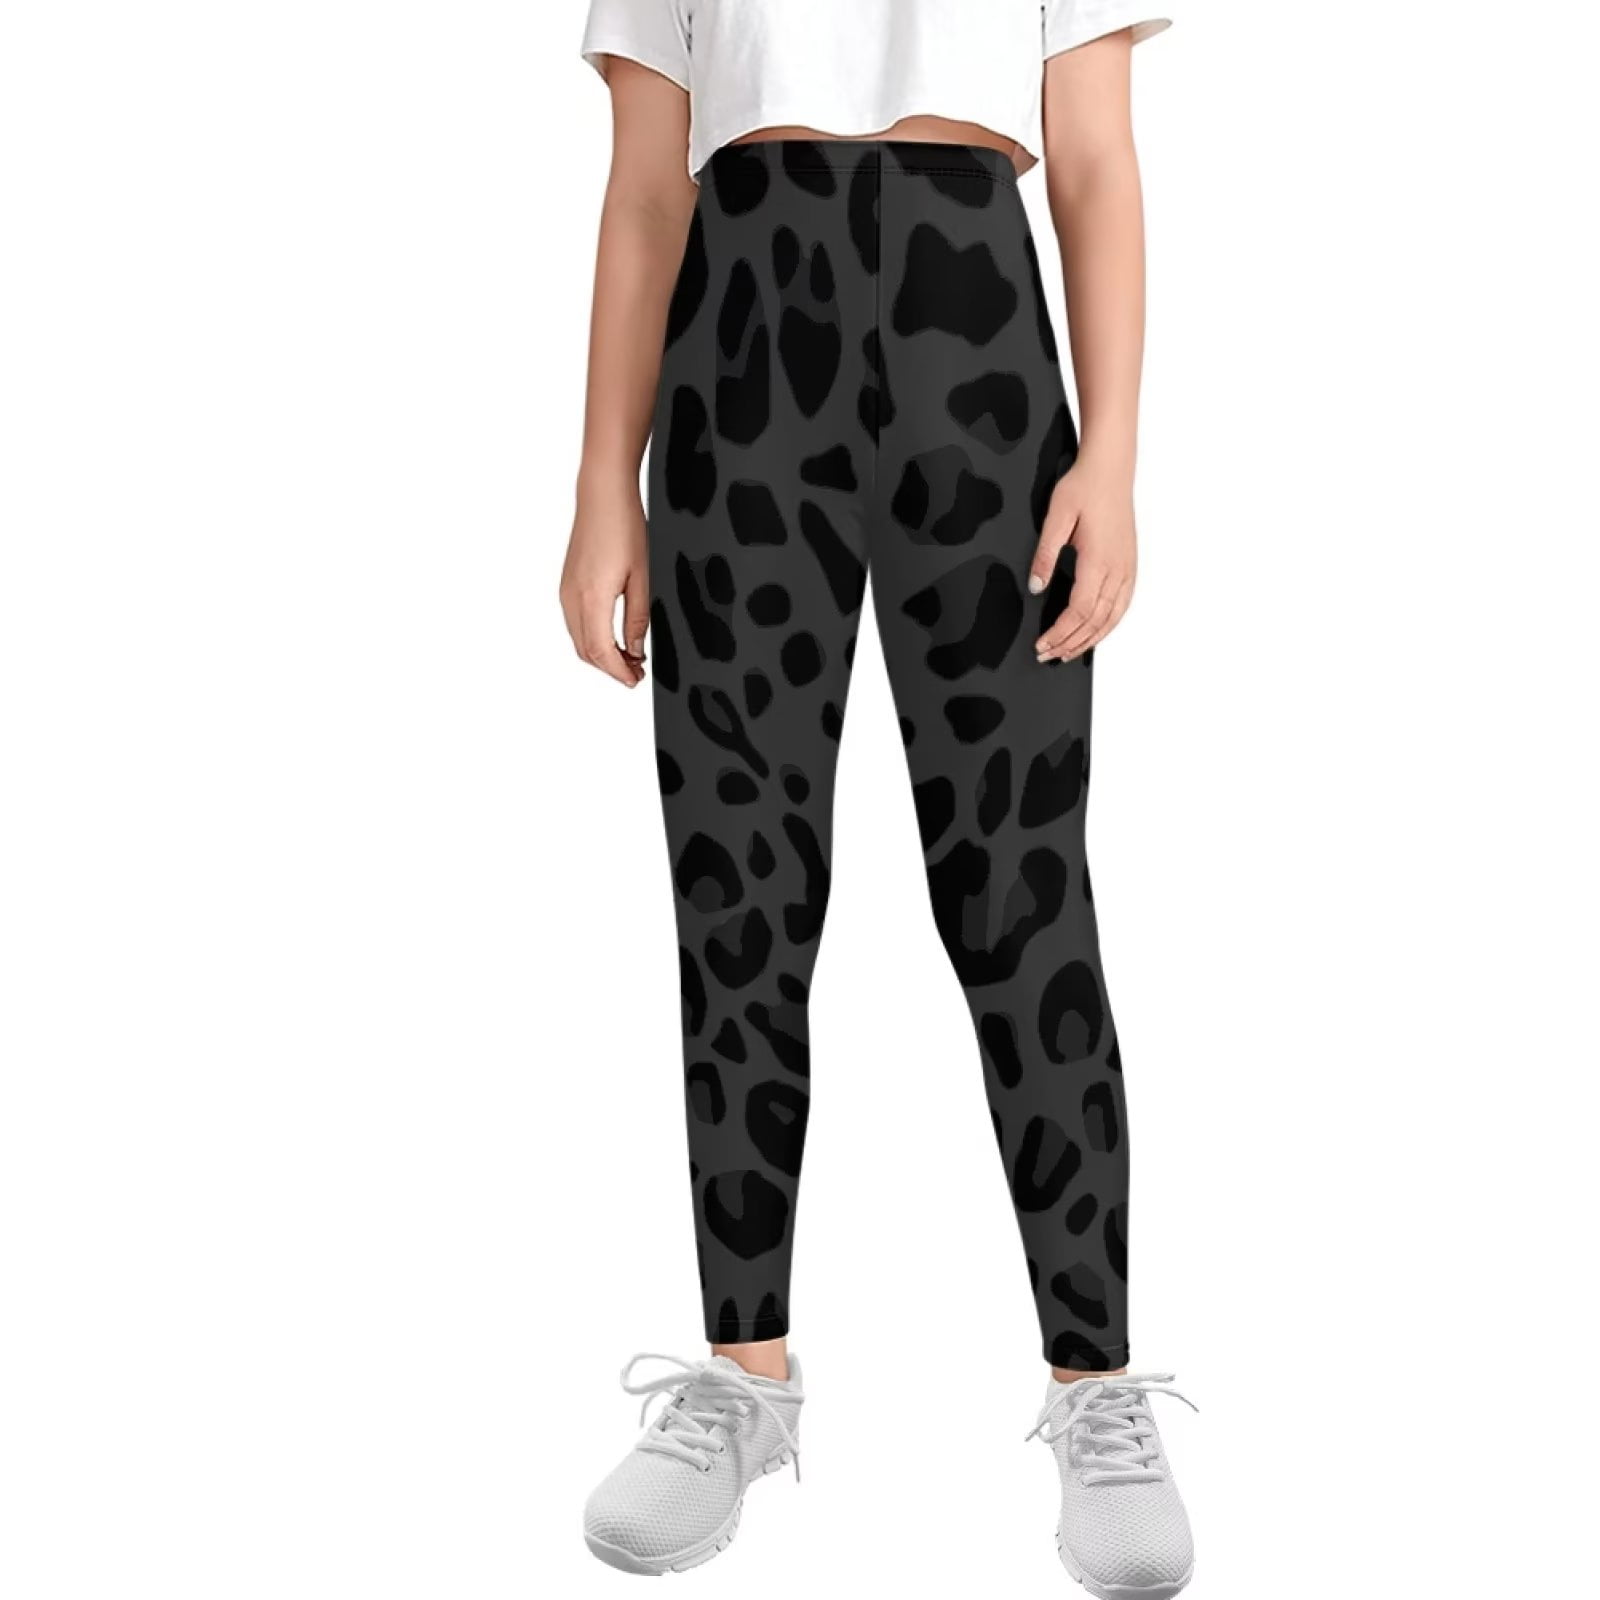 Trendy Leopard Print Leggings for Girls